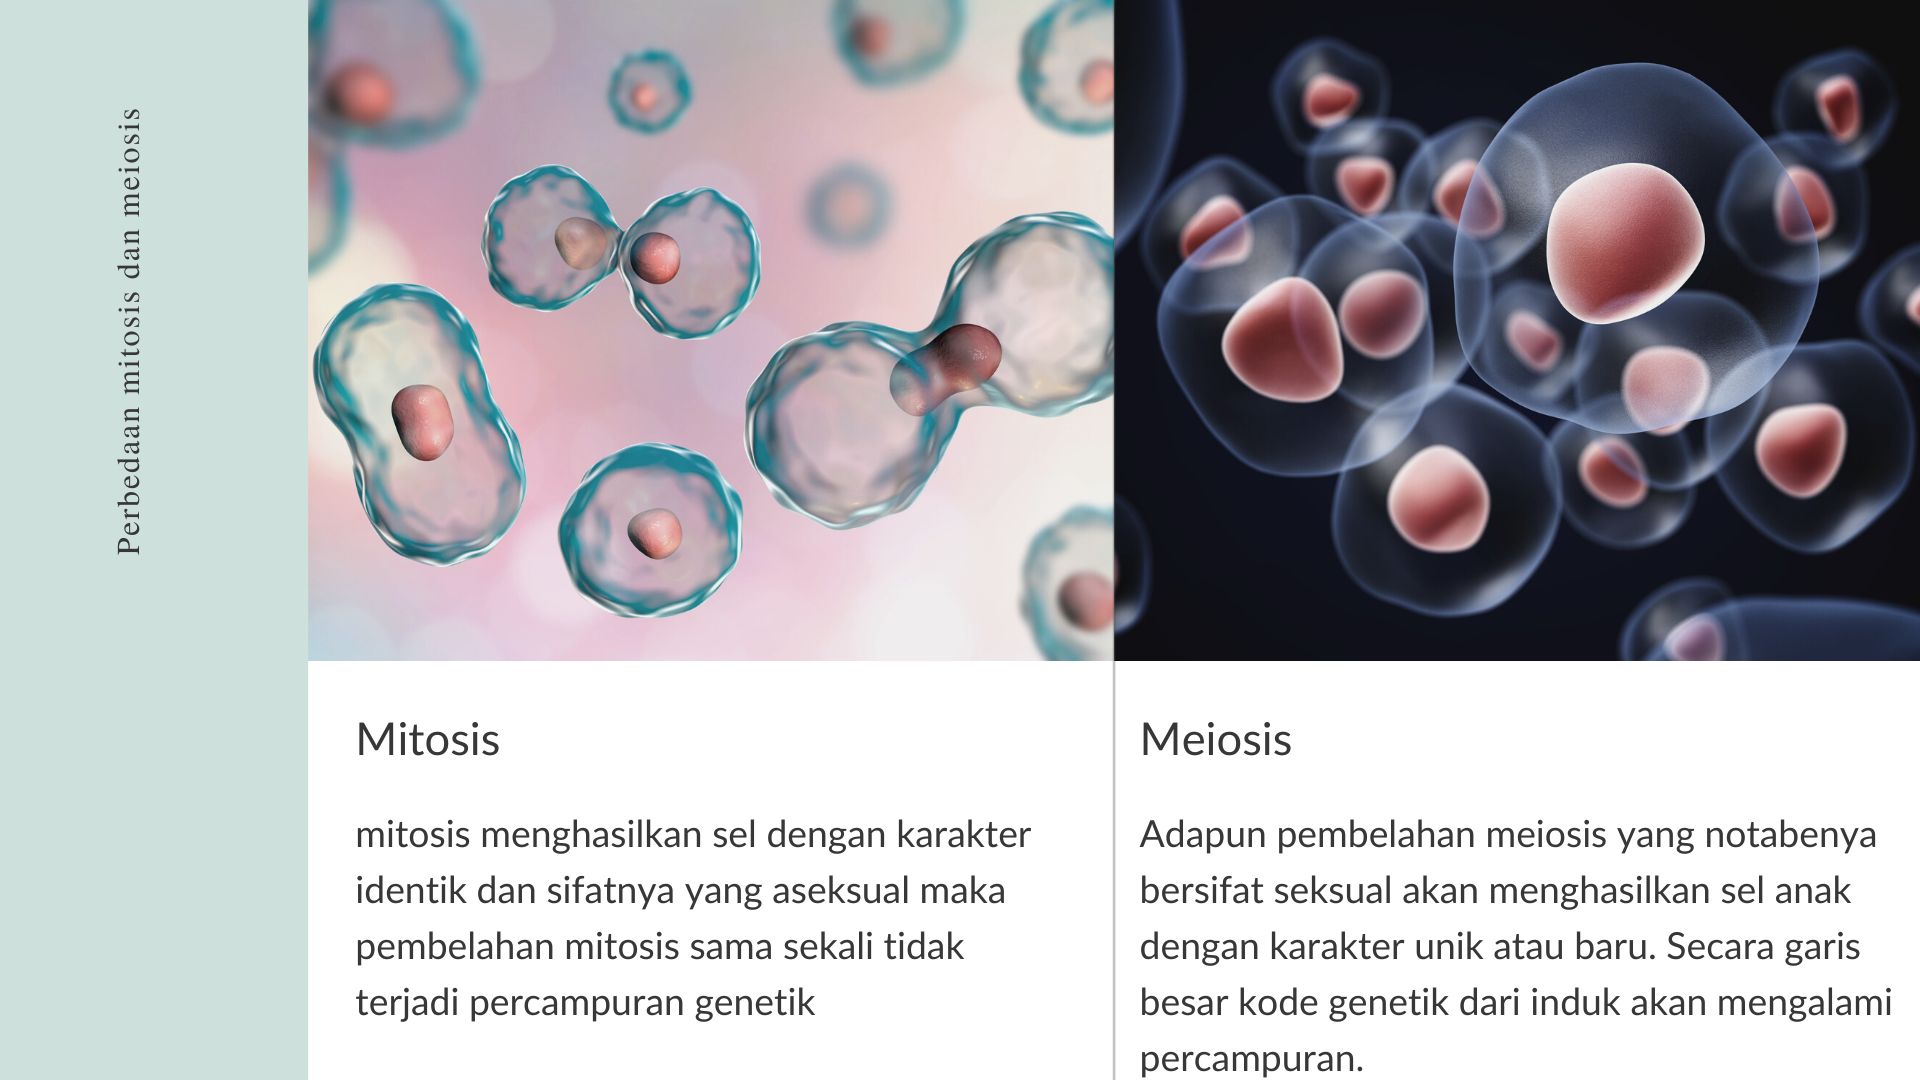 perbedaan mitosis dan meiosis dari segi genetik